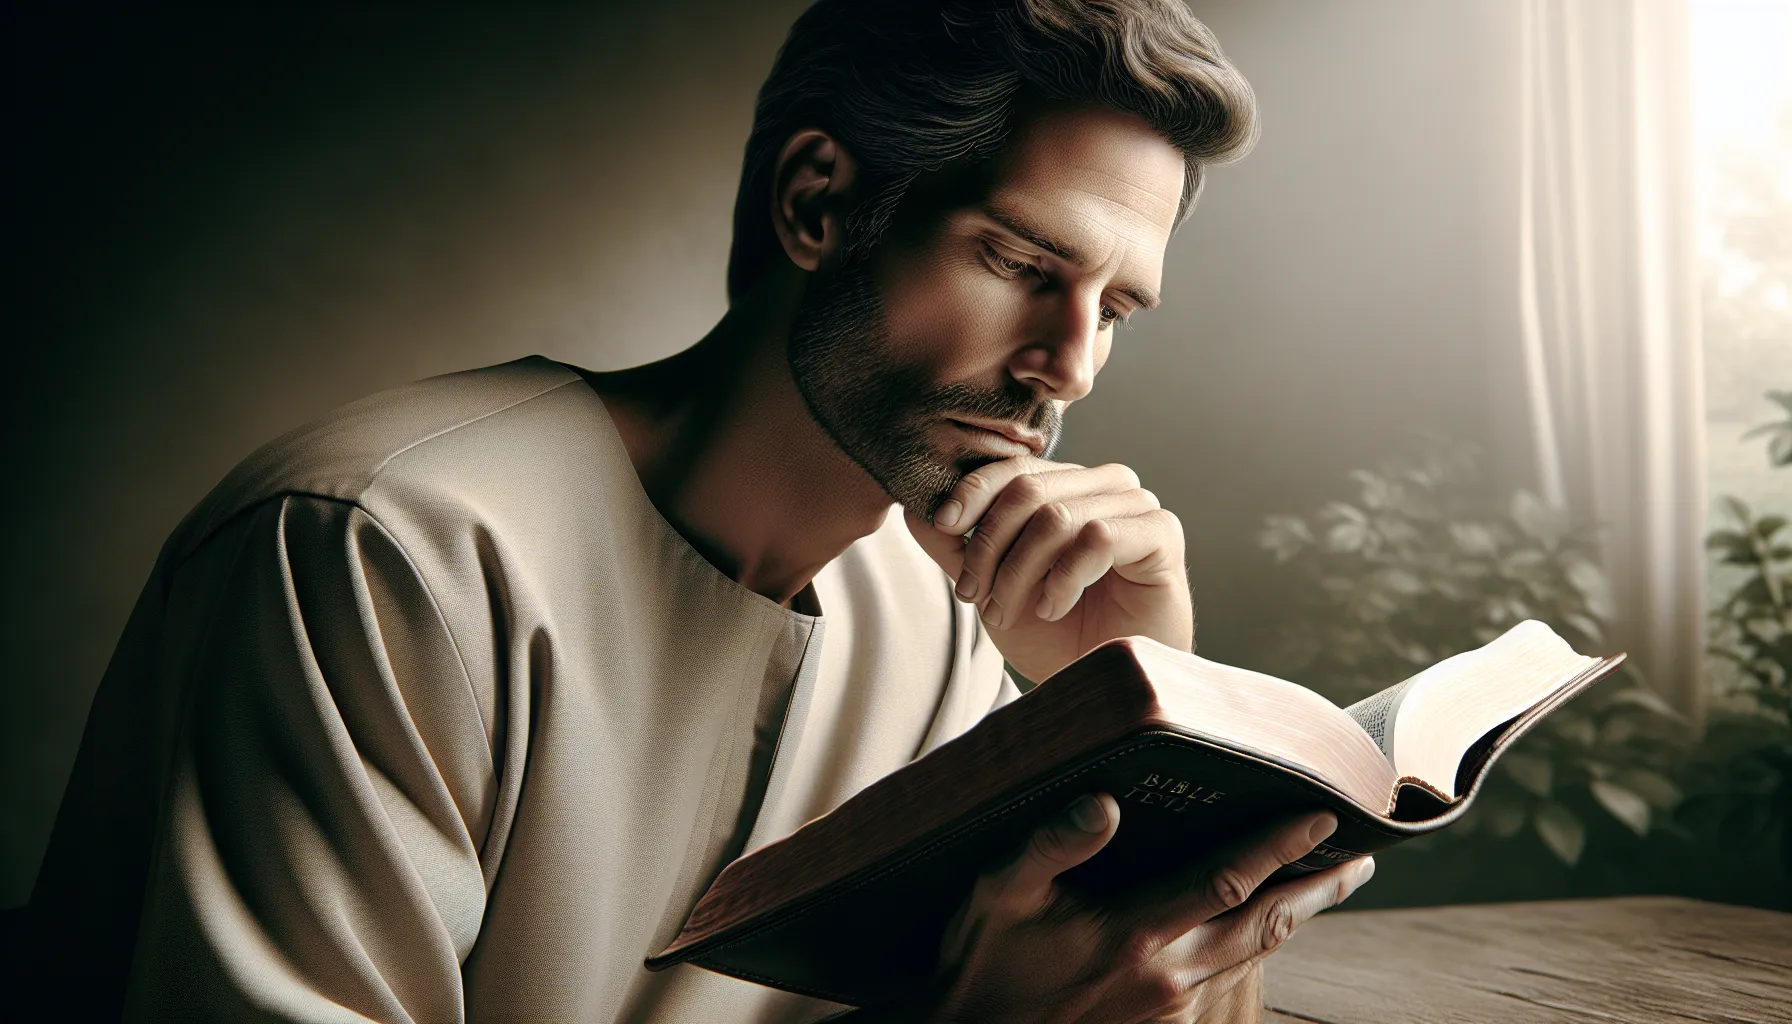 Imagen de un hombre leyendo la Biblia y reflexionando sobre su papel como líder y protector según la enseñanza bíblica.